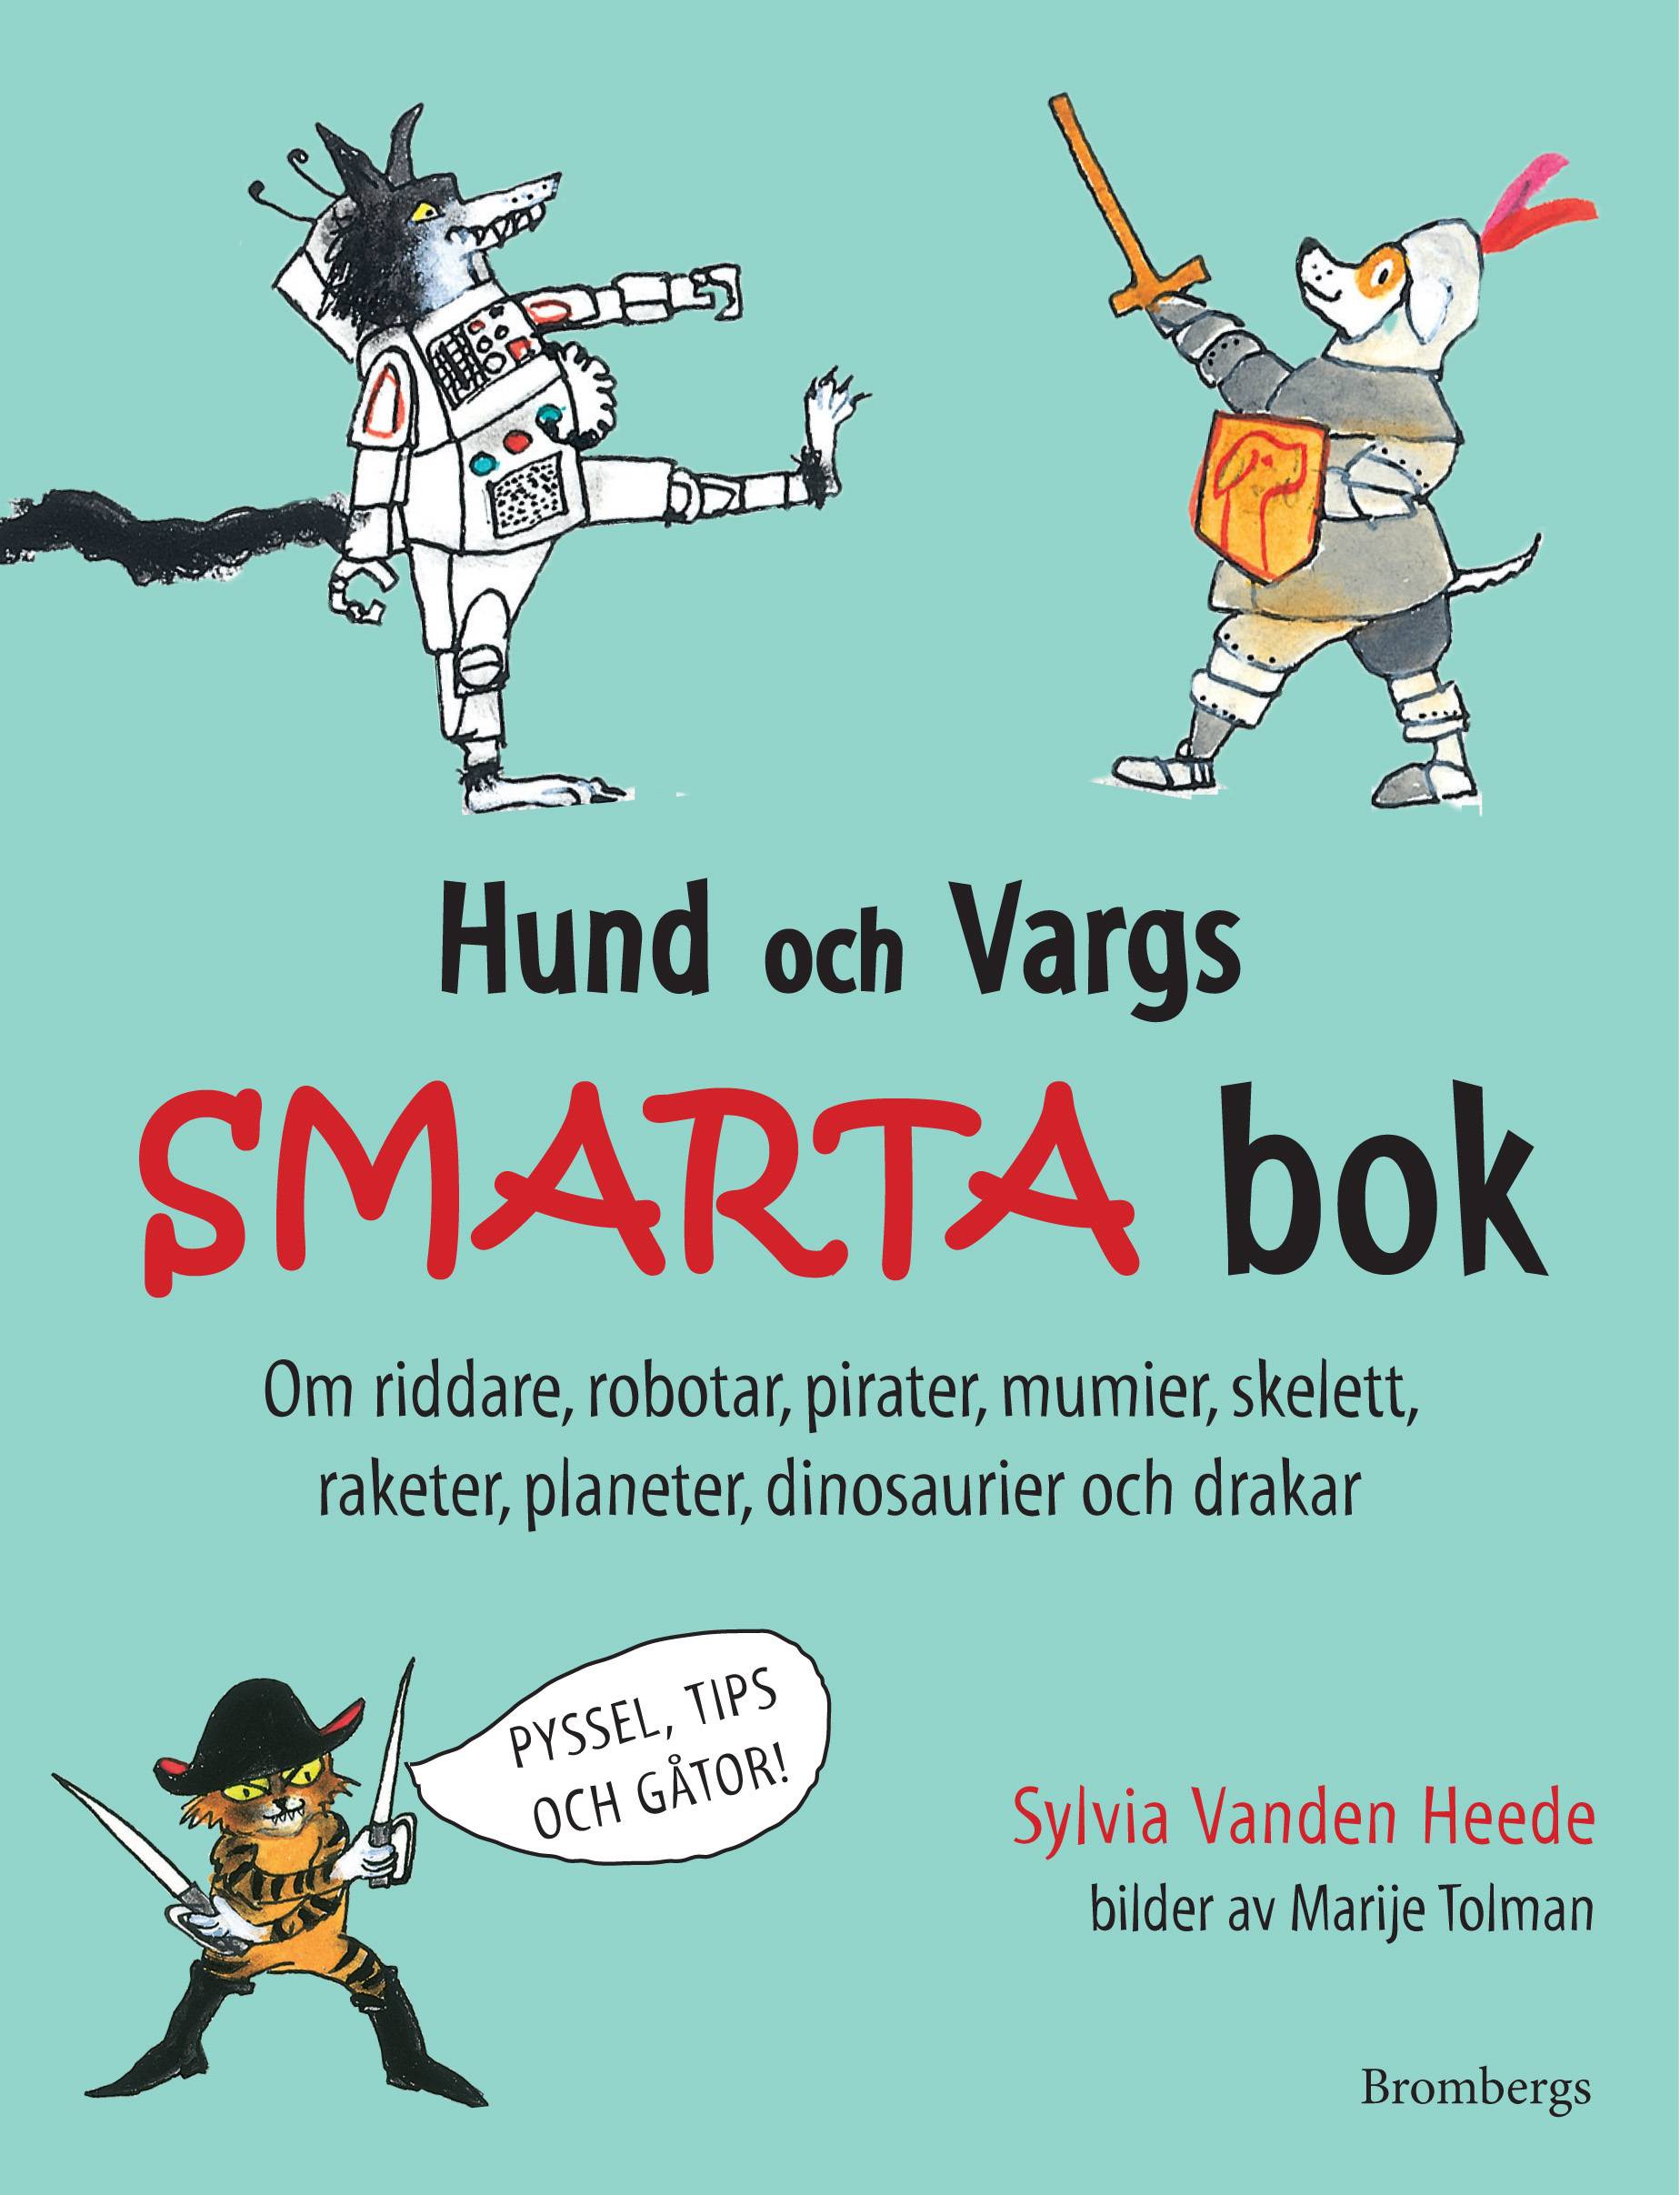 Hund och Vargs smarta bok